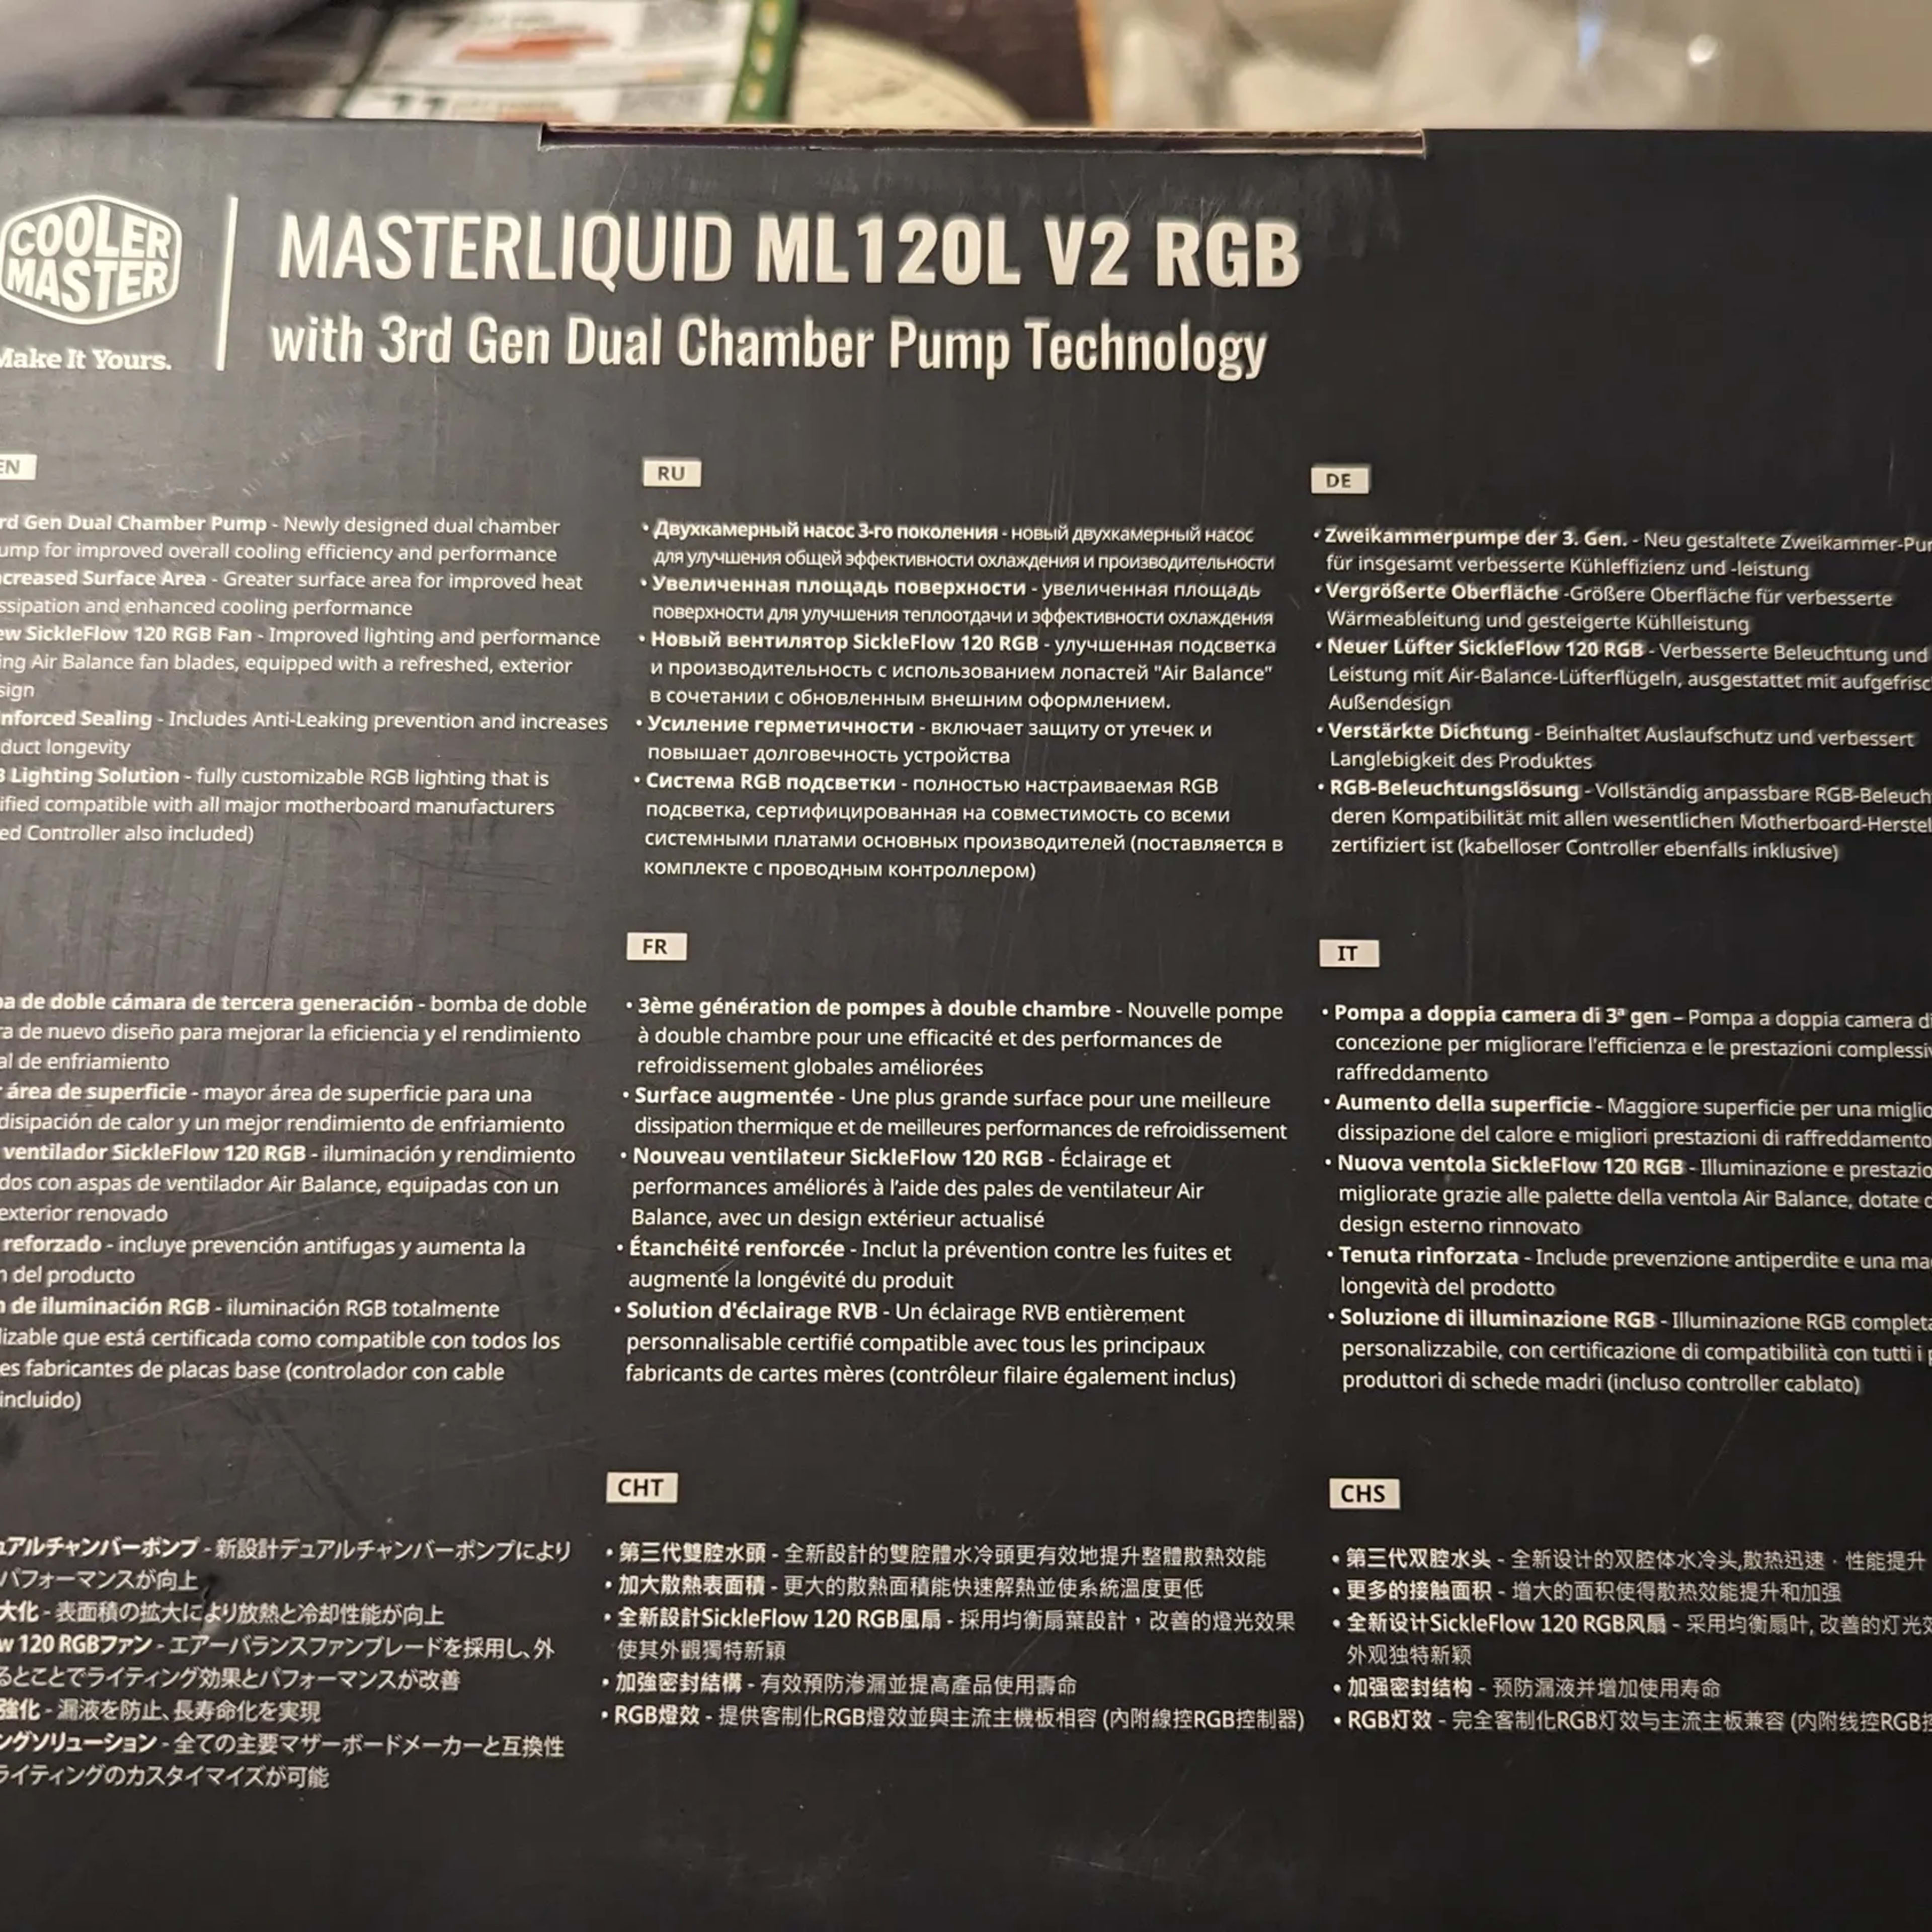 Cooler Master LiquidMaster ML120L V2 RGB